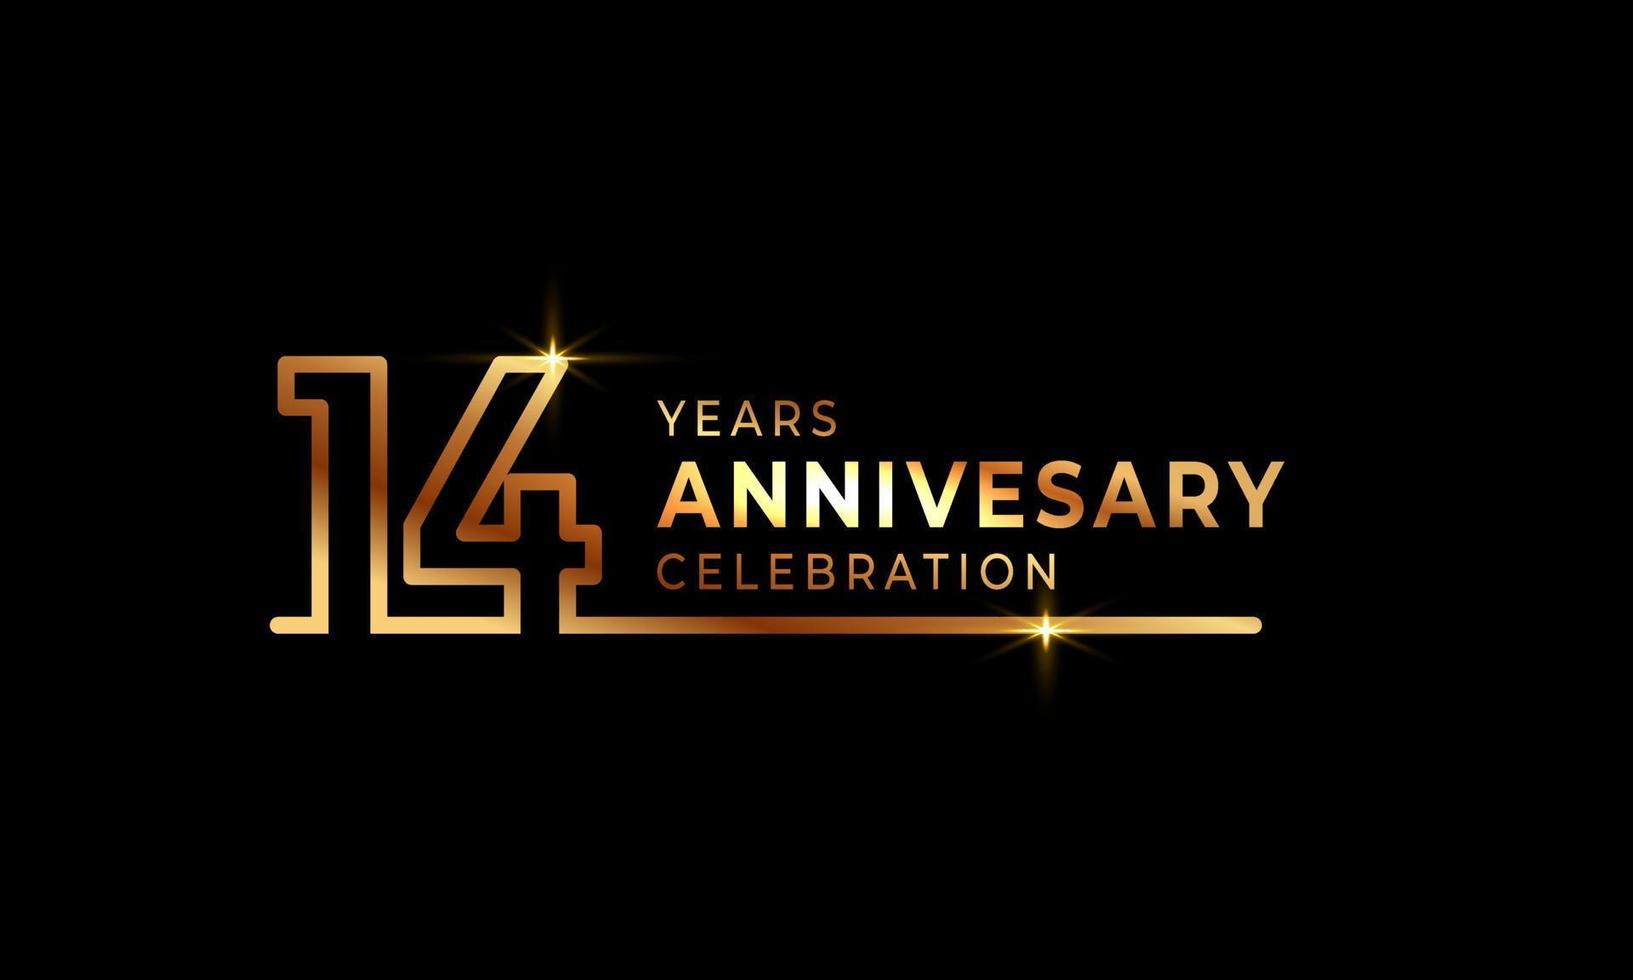 14-jarig jubileumviering logo met gouden gekleurde lettertypenummers gemaakt van één verbonden lijn voor feestgebeurtenis, bruiloft, wenskaart en uitnodiging geïsoleerd op donkere achtergrond vector